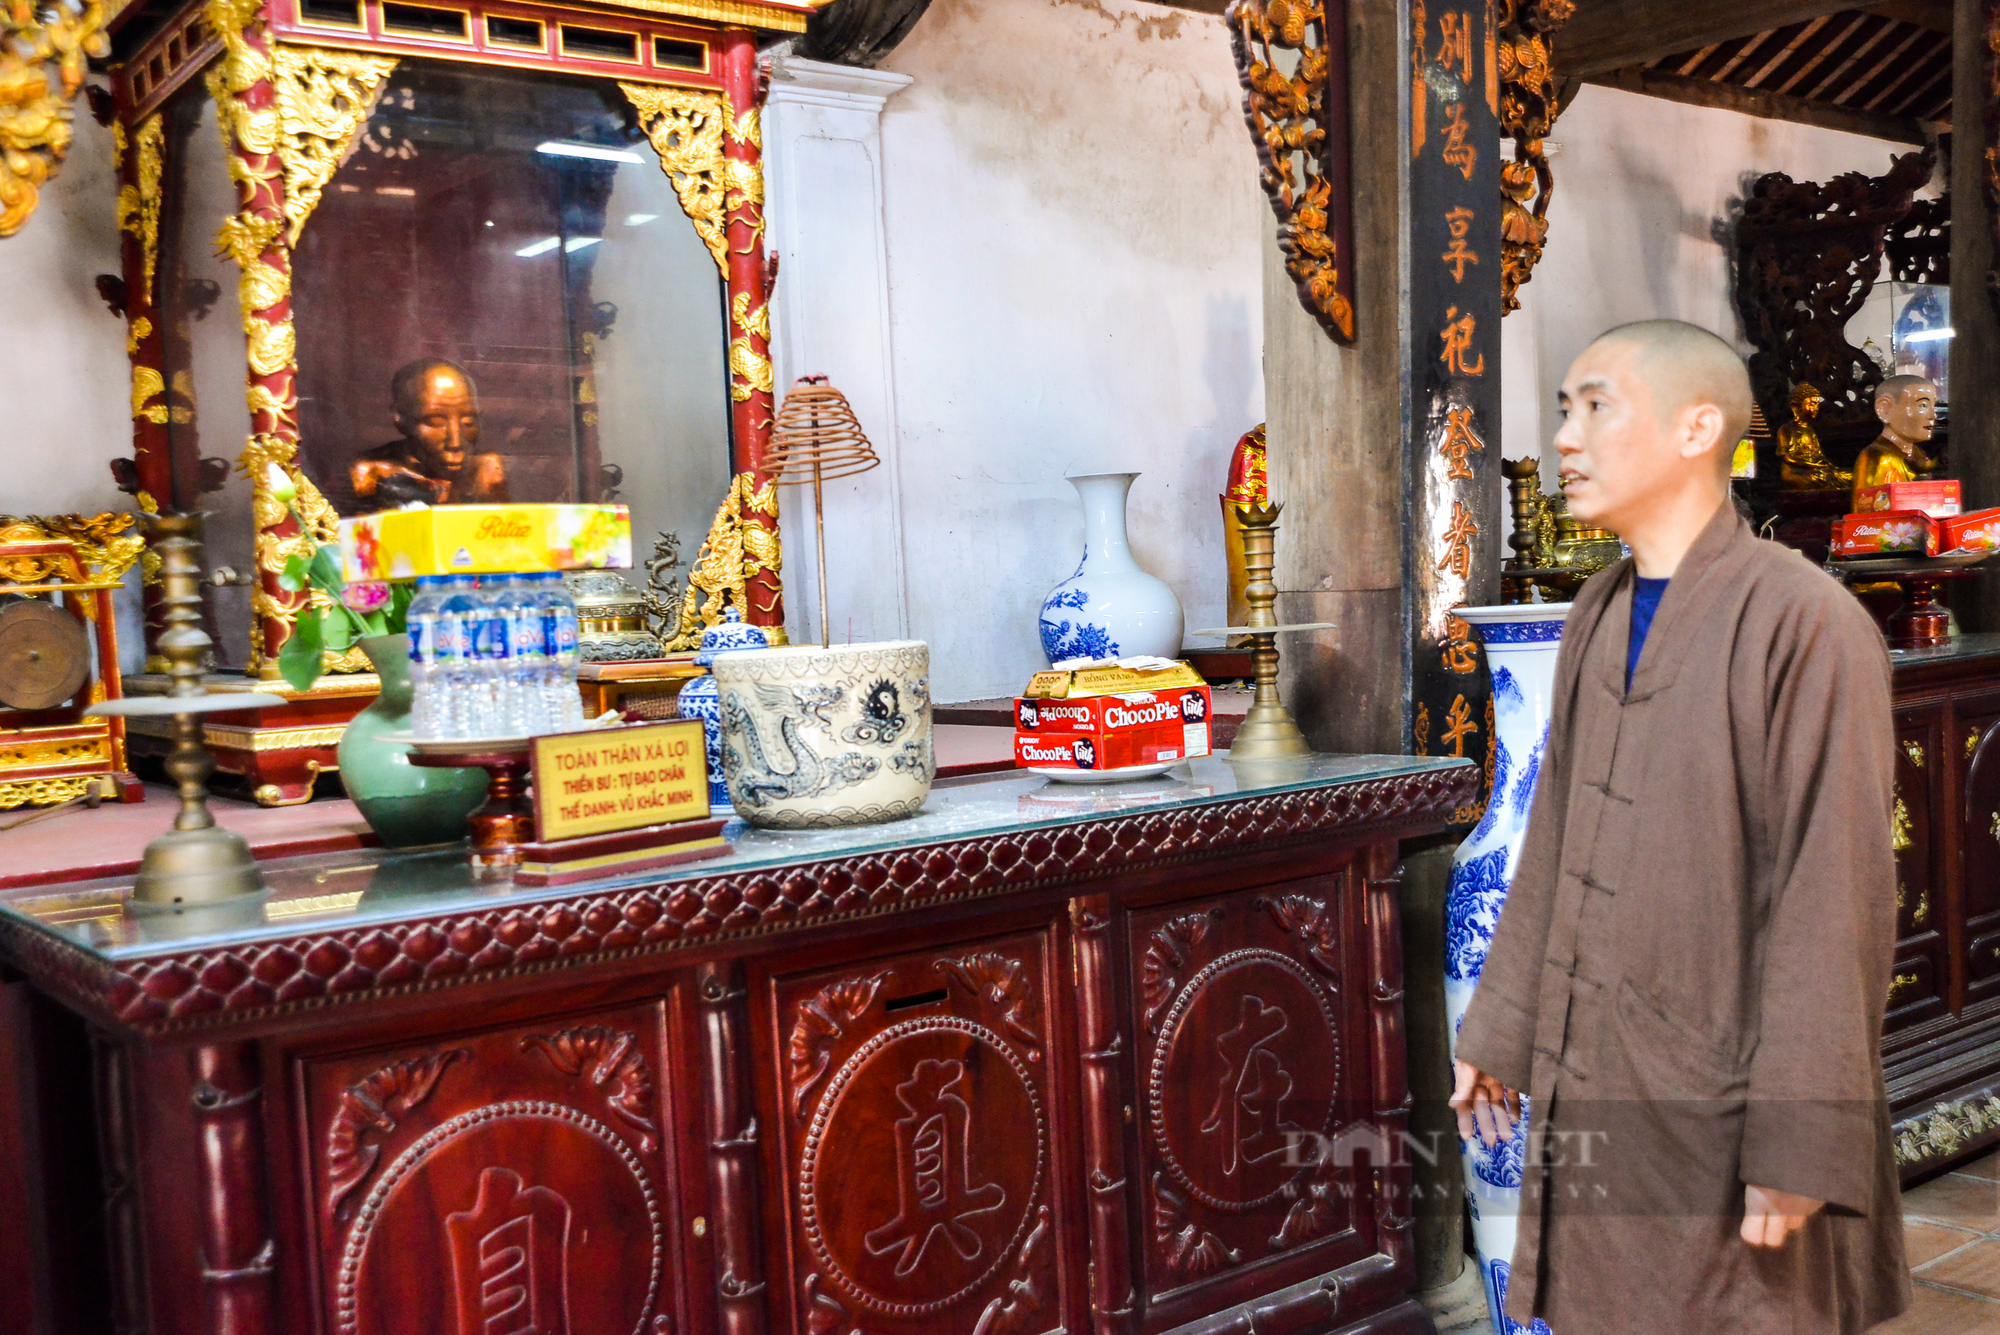 Khám phá chùa Đậu ở huyện Thường Tín (Hà Nội): Bí ẩn về 2 nhà sư ngồi thiền trong thất gần 400 năm - Ảnh 2.